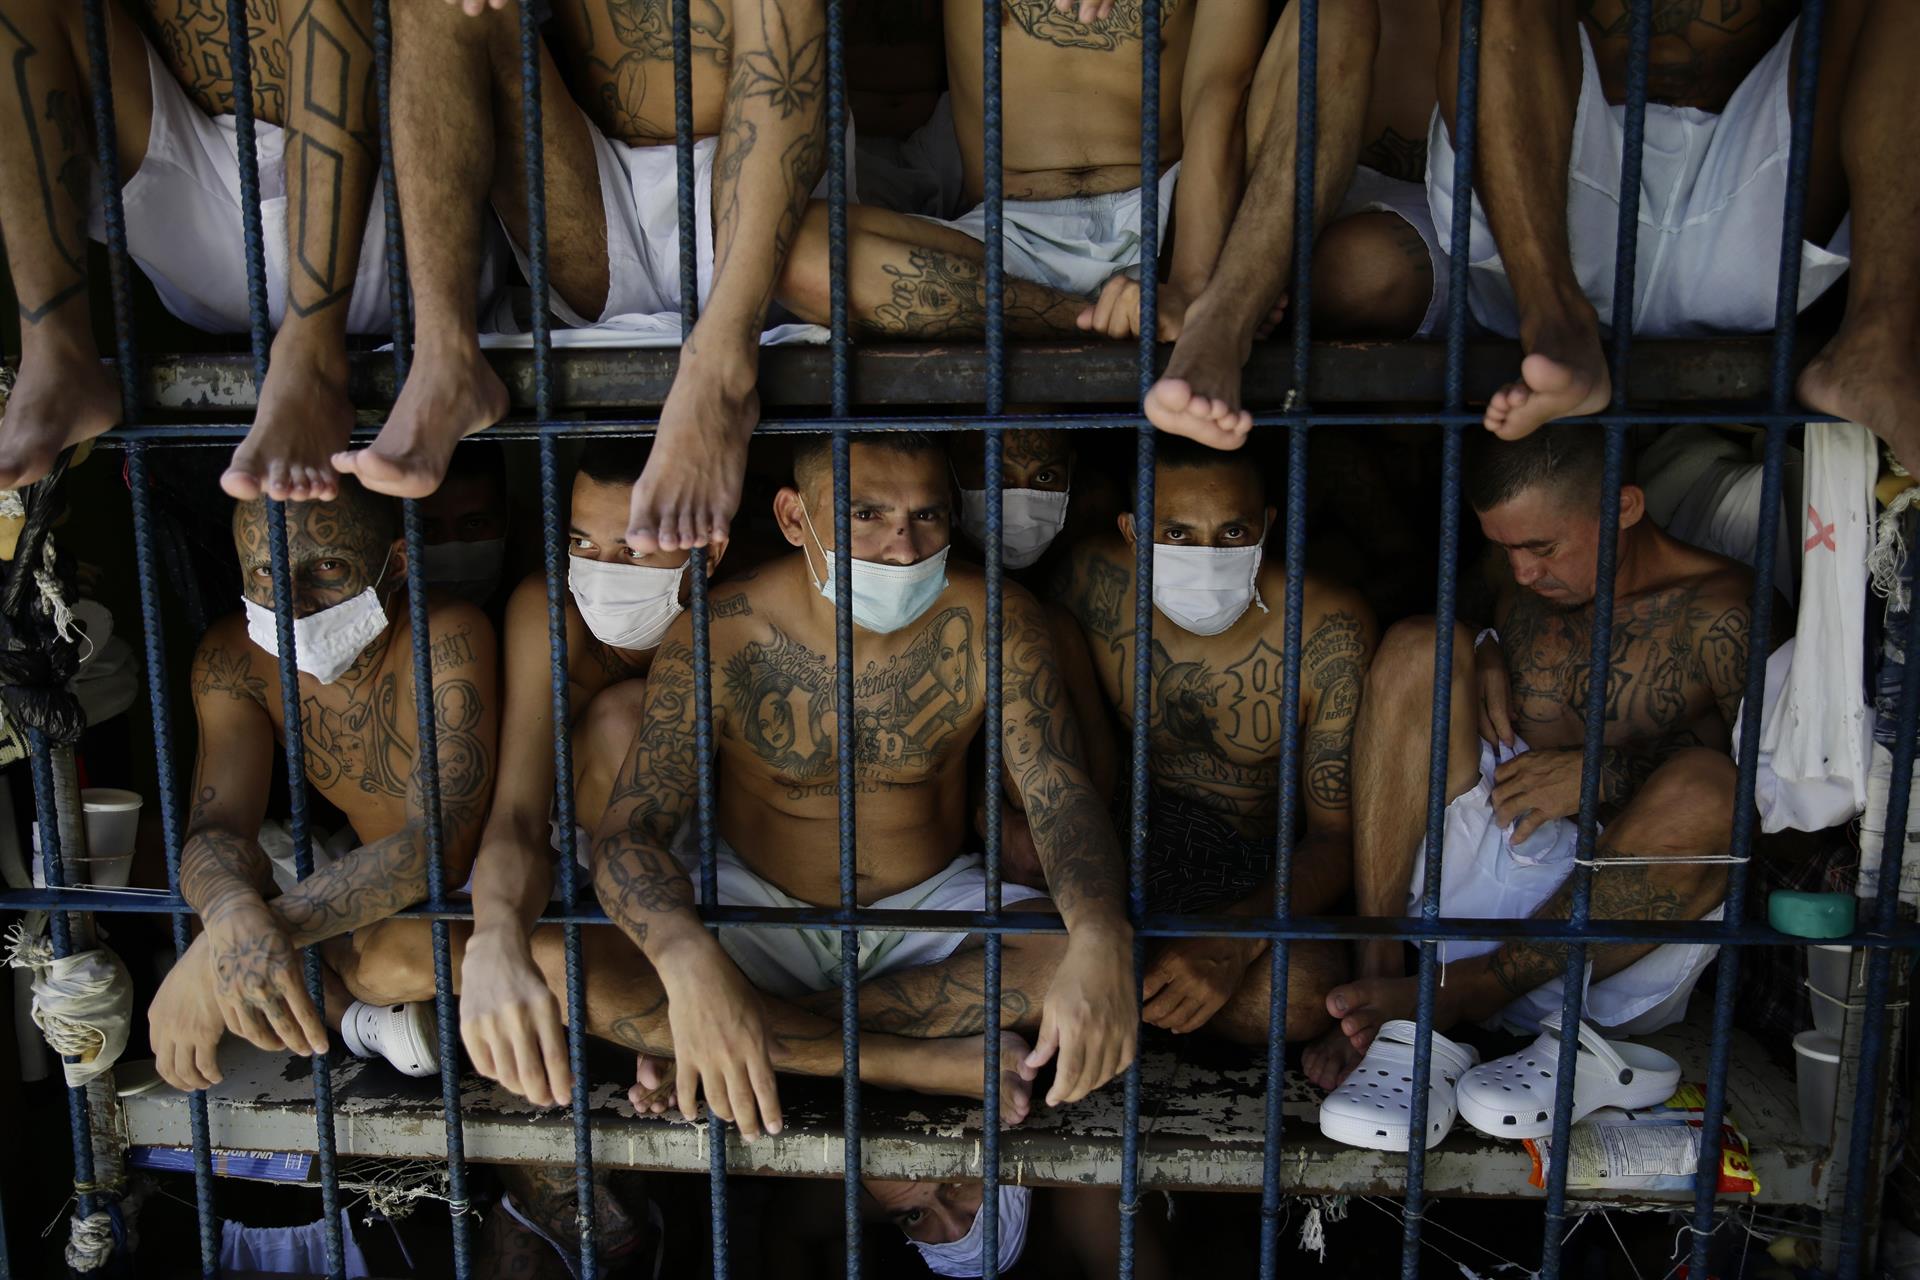 Fotografía de archivo de pandilleros de Barrio 18 que permanecen tras una celda. EFE/ Rodrigo Sura
